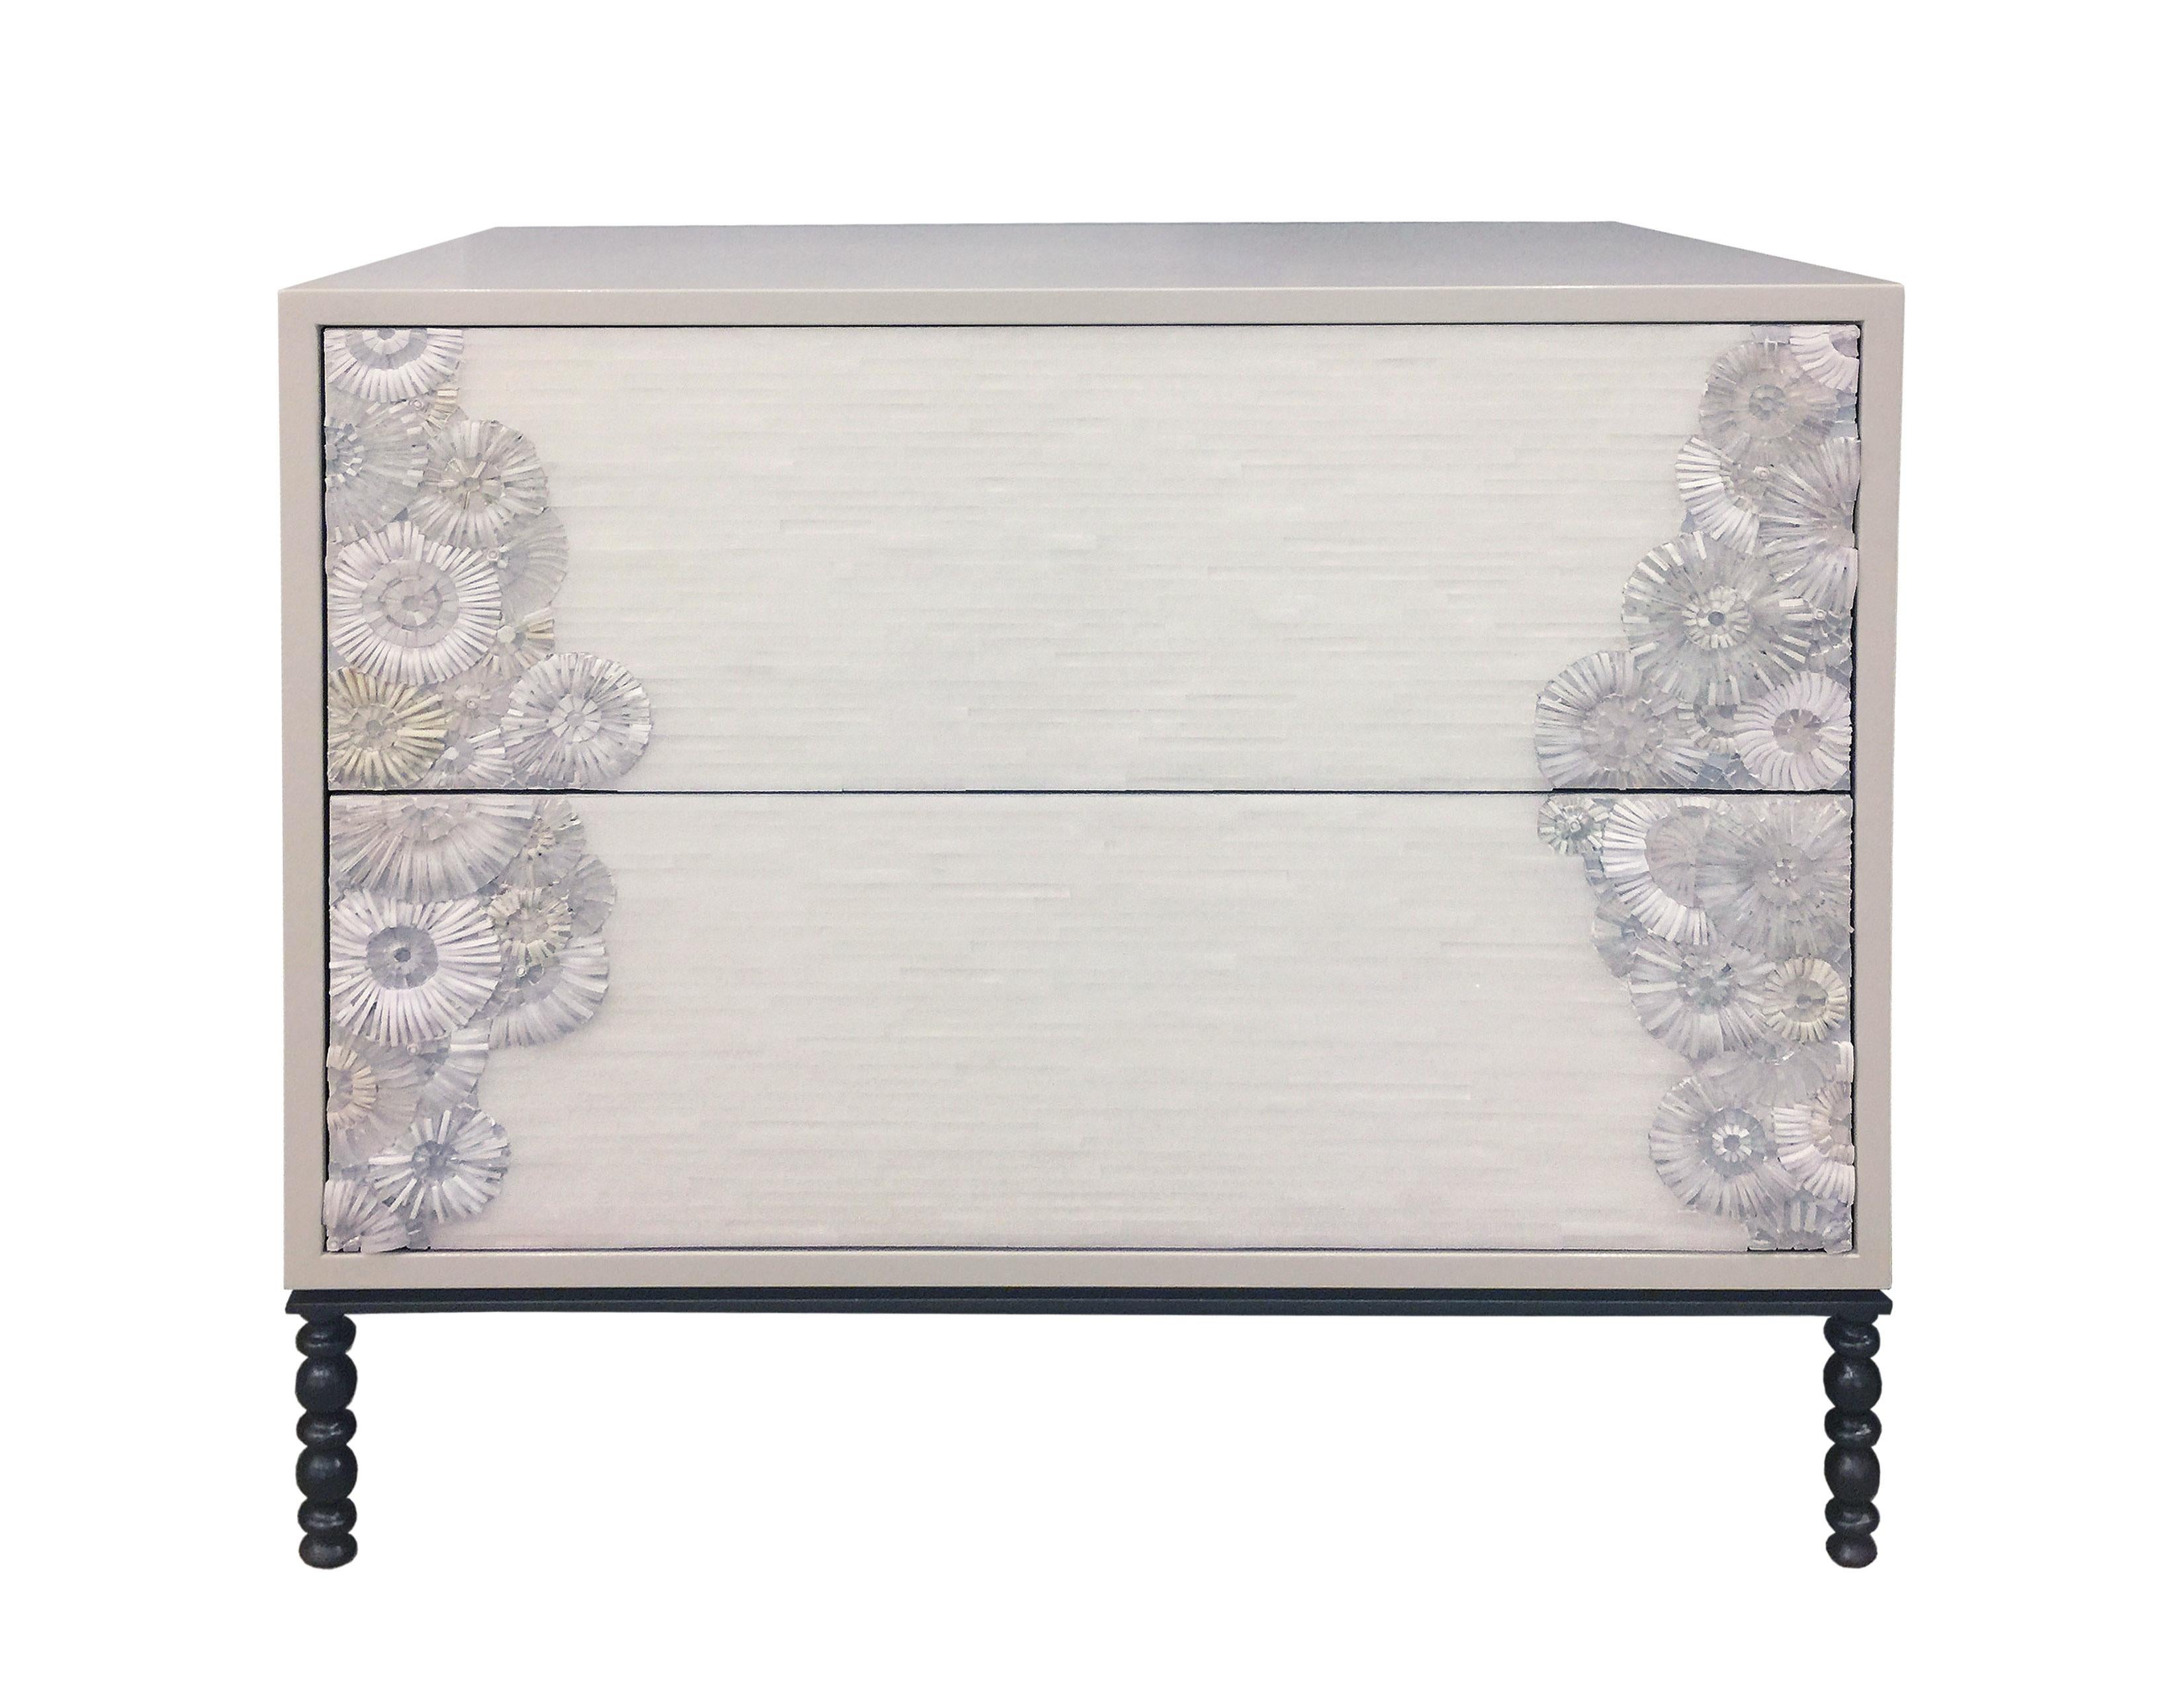 La table de nuit Blossom d'Ercole Home présente une façade à 2 tiroirs, avec une finition en bois laqué Misty Gray.
Des mosaïques de verre taillées à la main dans diverses nuances de blanc et d'ivoire décorent la surface selon un motif de mosaïque